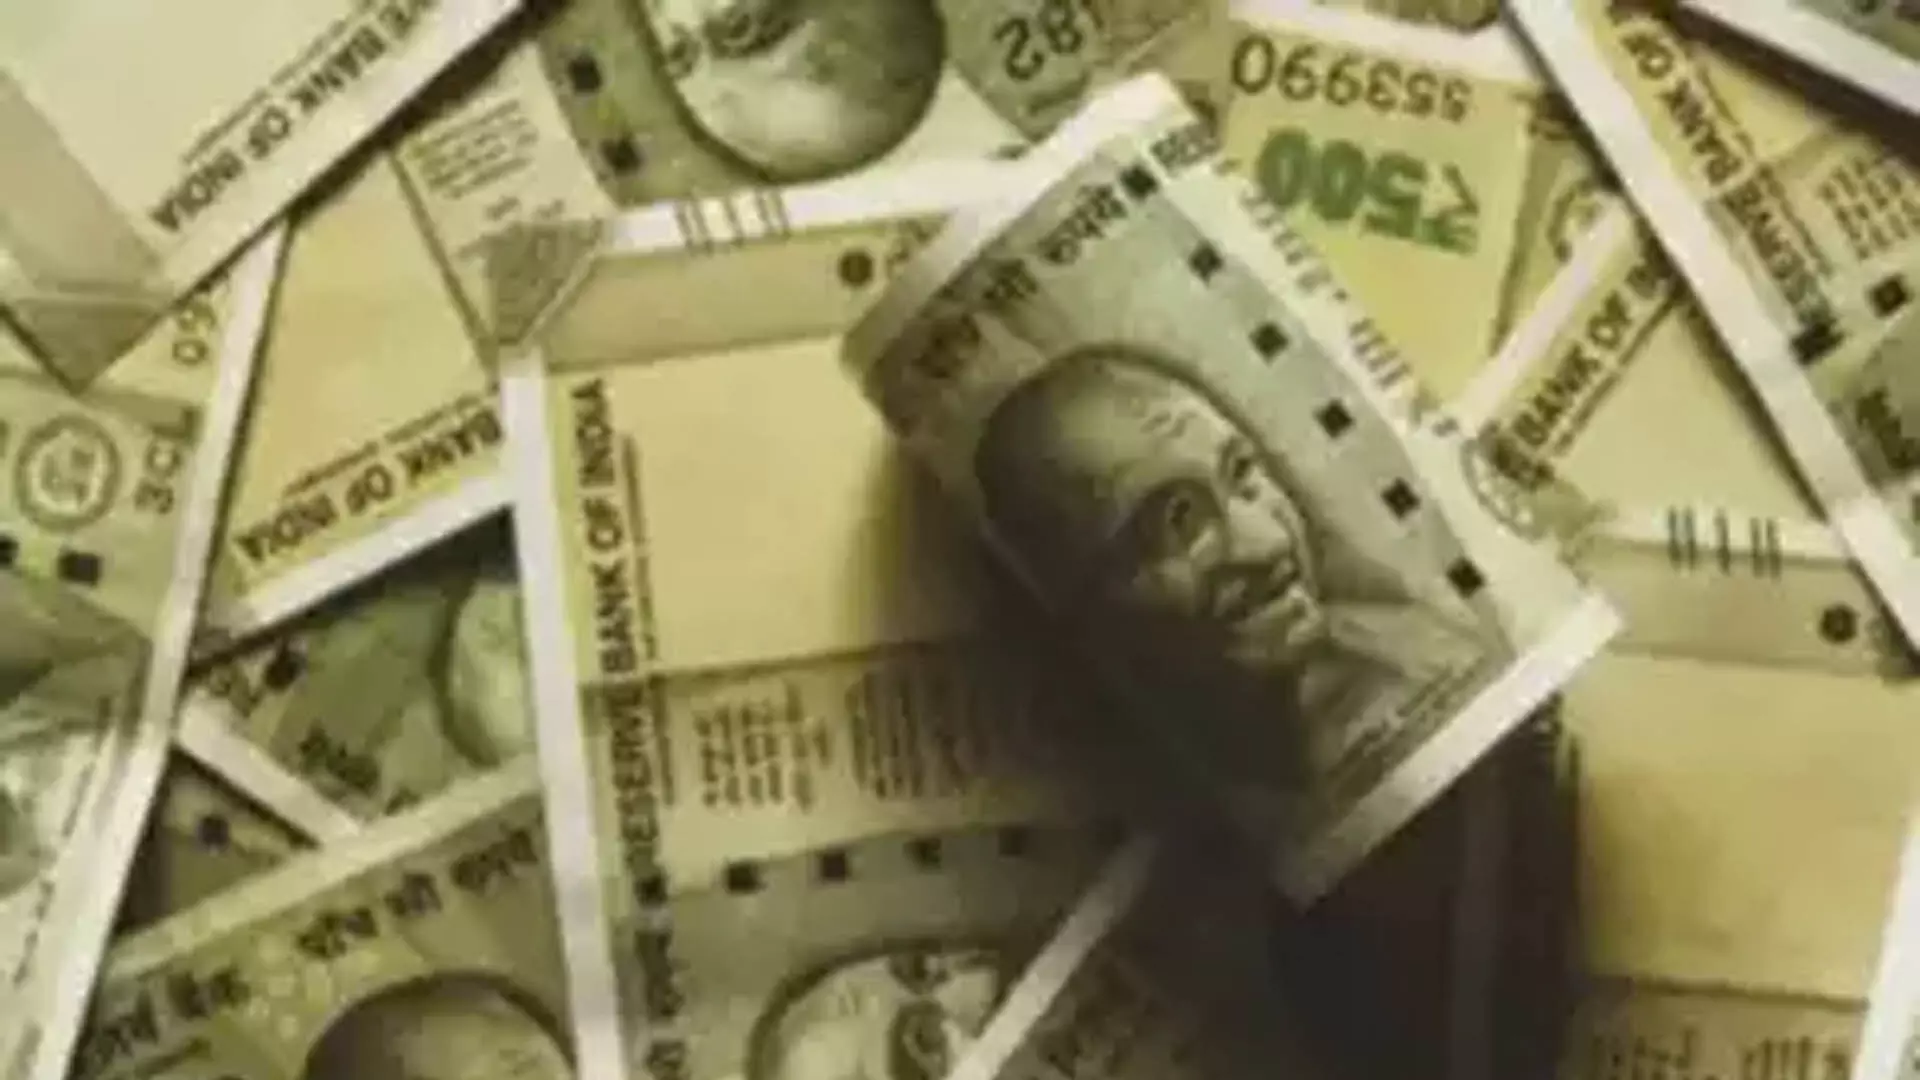 Maharashtra News: एक व्यक्ति ने पॉलिसी की जानकारी रखने वाले ‘कार्यकारी’ को 1 लाख रुपये का चूना लगाया